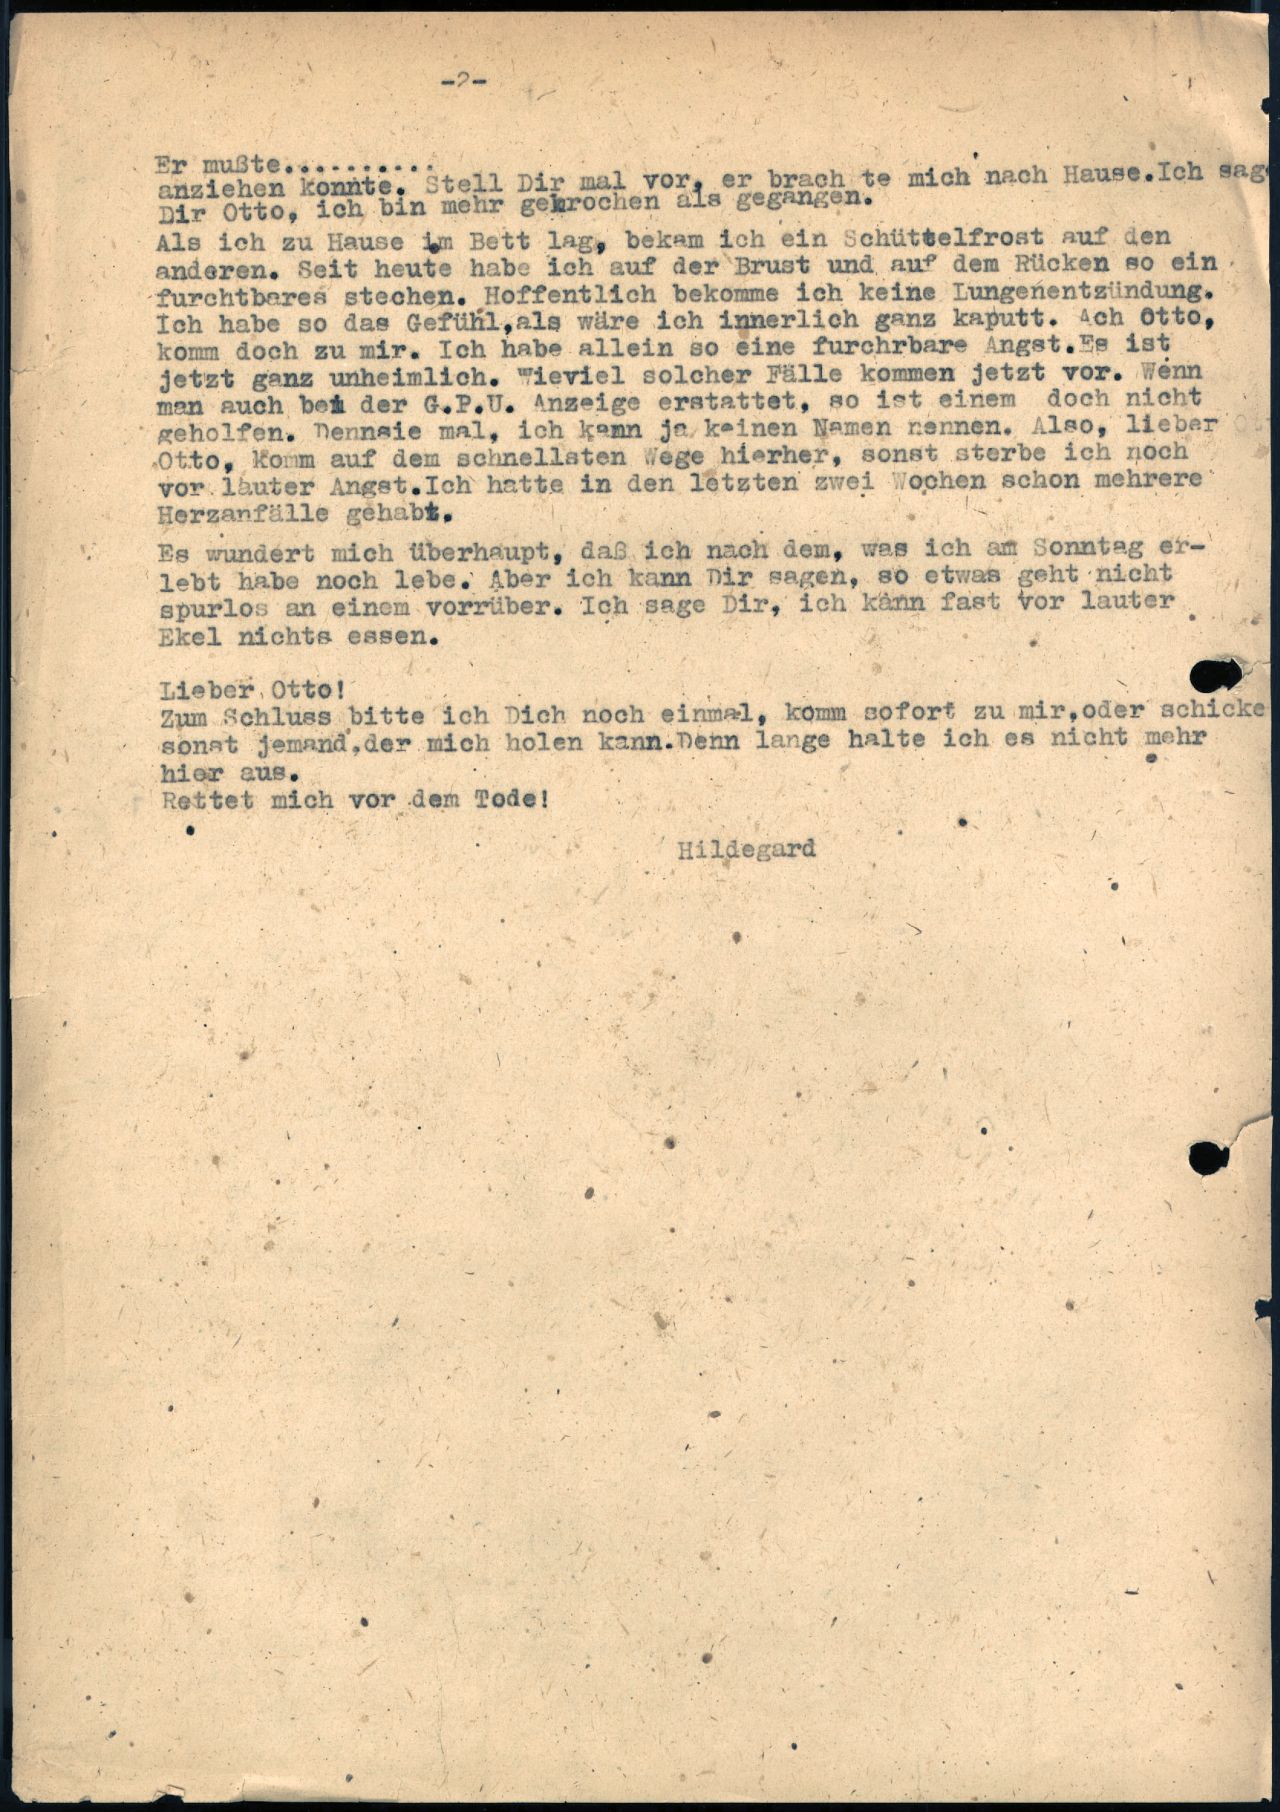 Eine Weimarerin berichtet in einem Brief vom 17. Dezember 1945 an ihren Mann von ihrer Vergewaltigung durch einen sowjetischen Besatzungssoldaten.